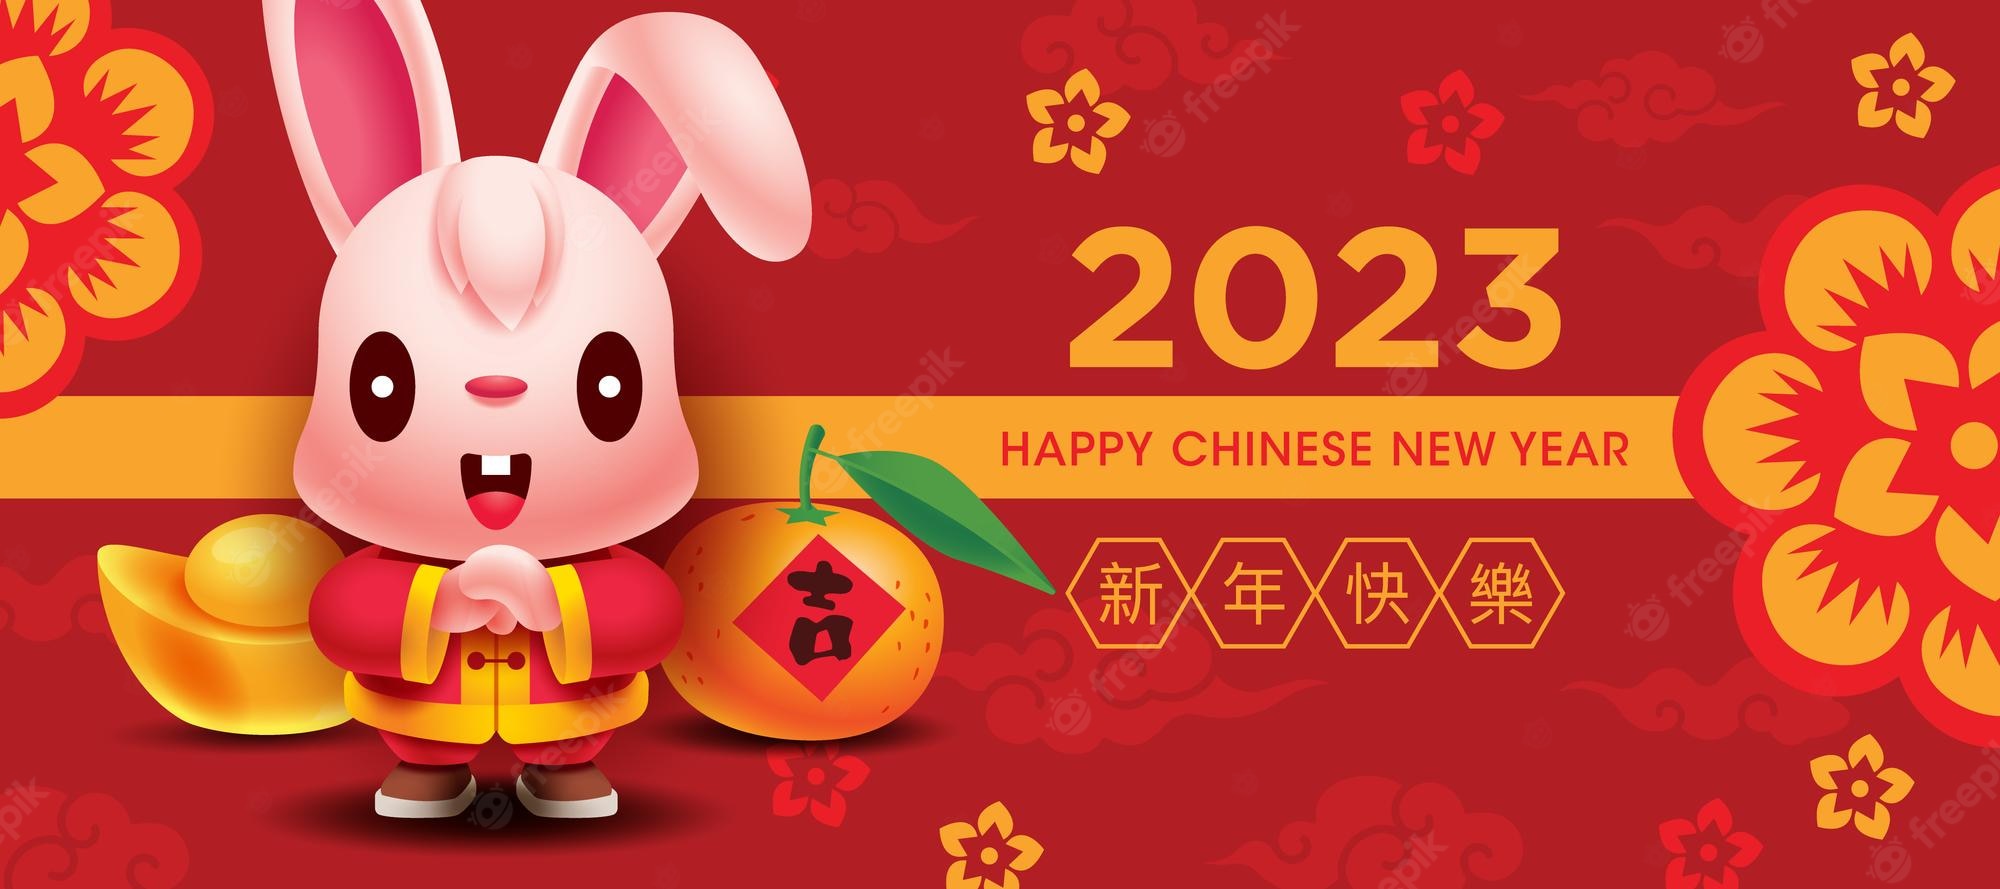 2023-চীনা-নতুন-বছর-চতুর-খরগোশ-অভিবাদন-ব্যানার-সহ-সোনার-ম্যান্ডারিন-কমলা-লাল-পটভূমি_438266-587